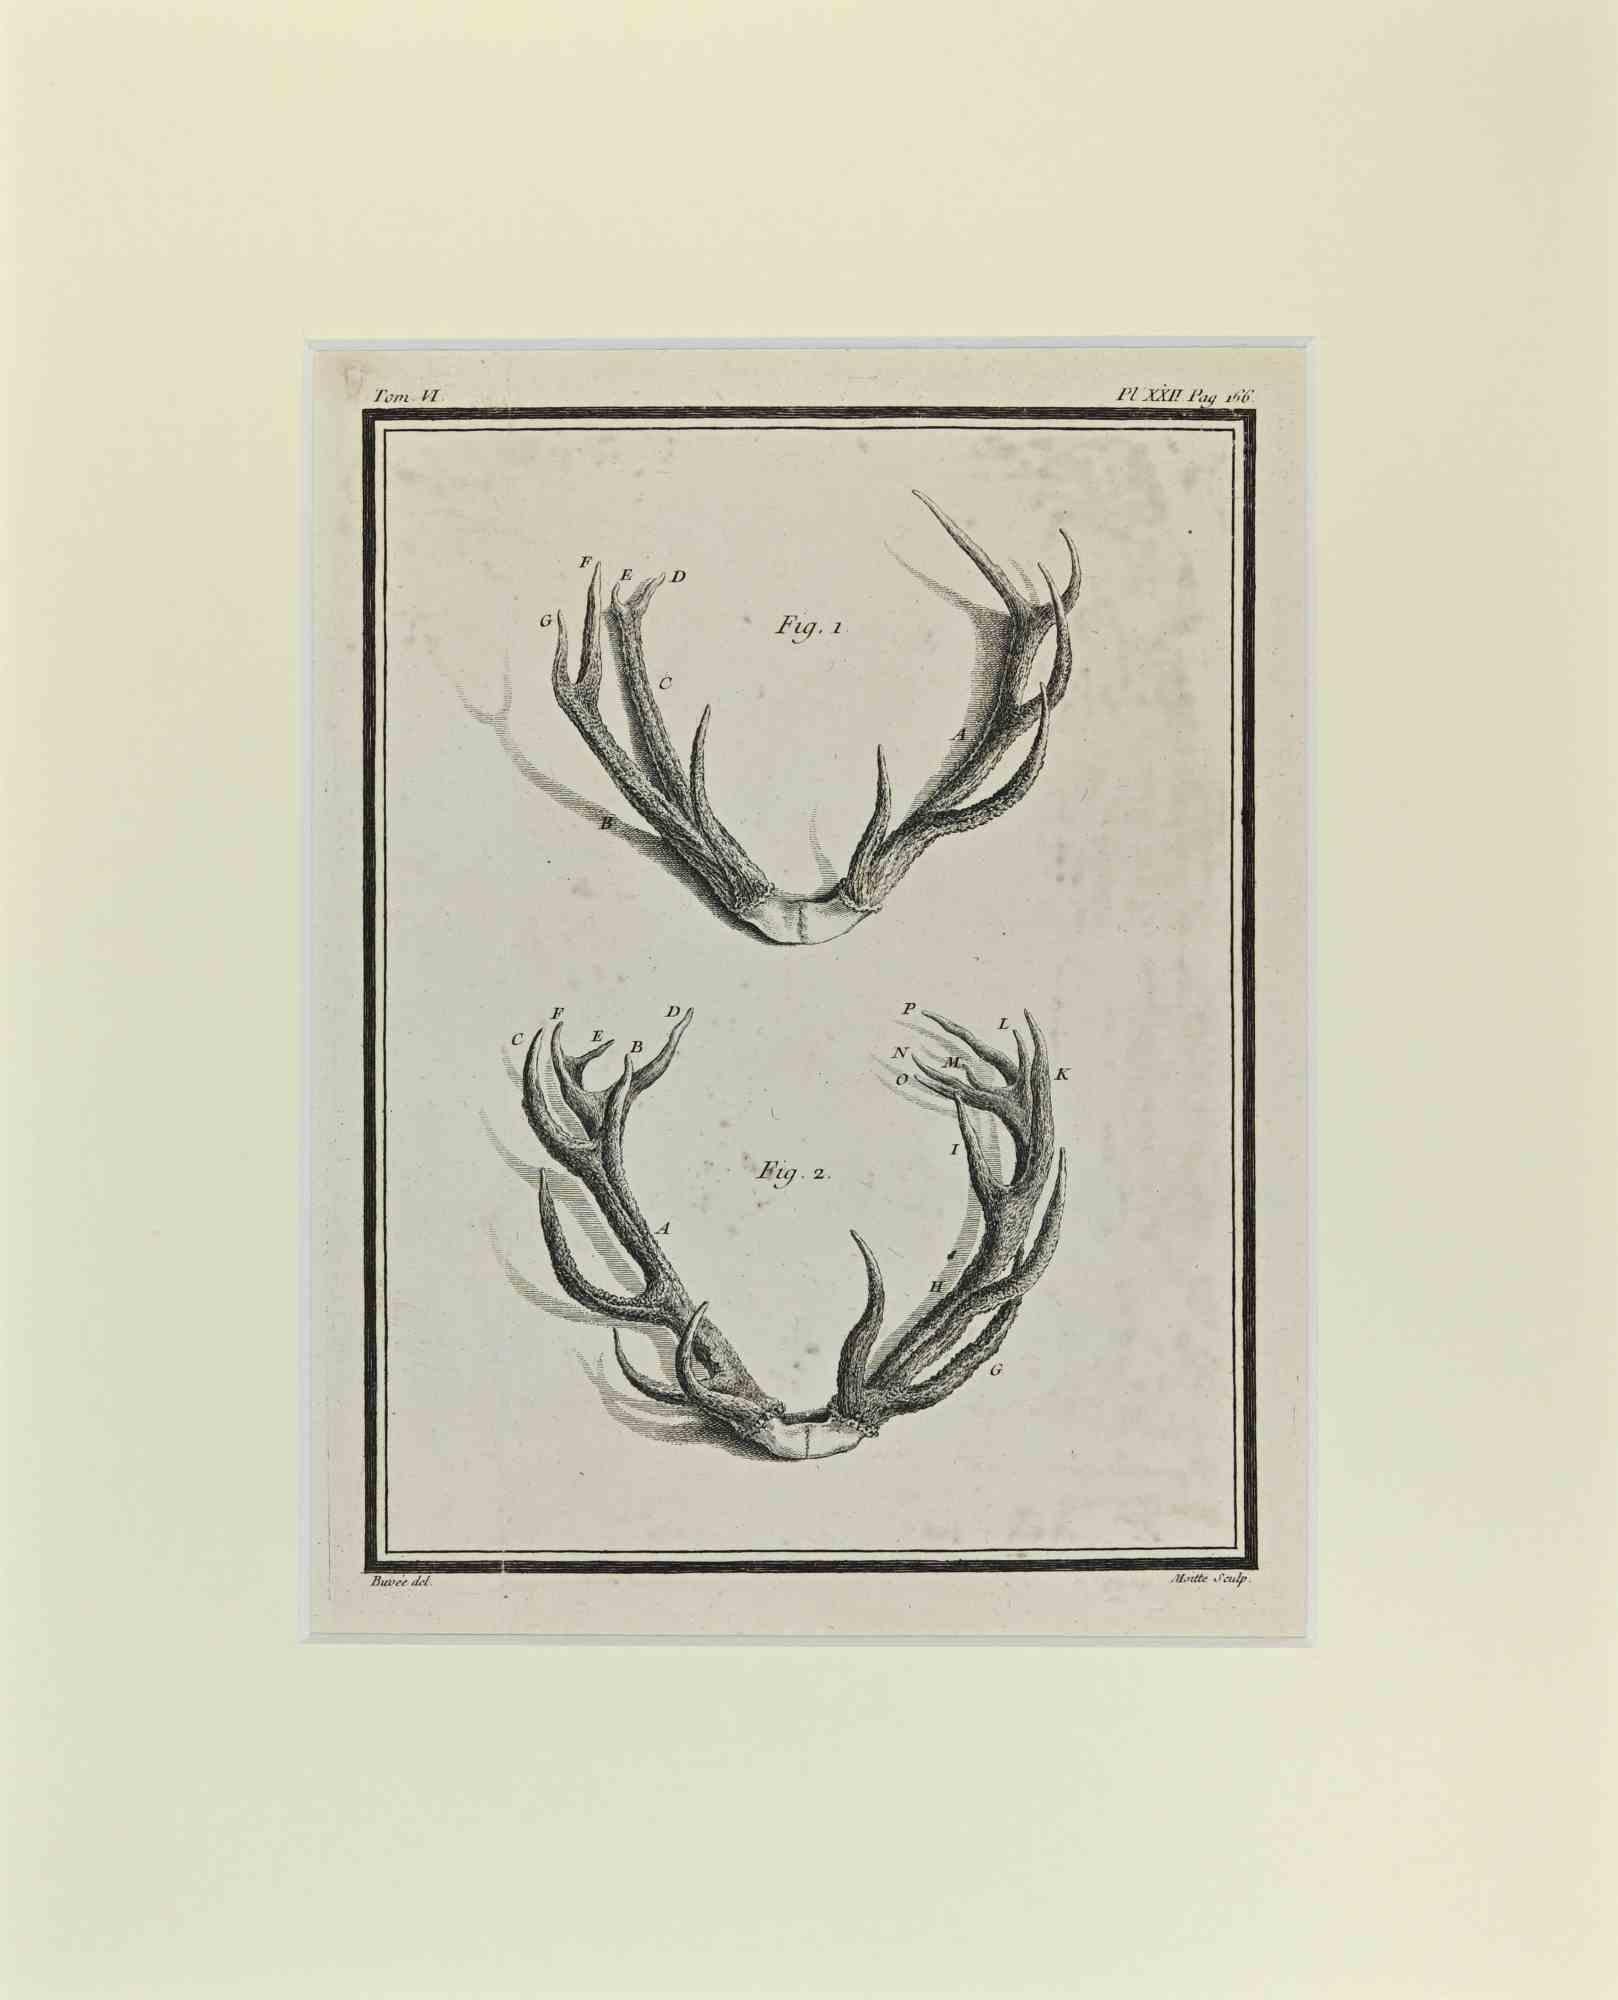 Cornamentas ist ein Kunstwerk von Buvée l'Américain aus dem Jahr 1771.  

Radierung B./W. Druck auf Elfenbeinpapier. Signiert auf der Platte am unteren linken Rand.

Das Werk ist auf Karton geklebt. Abmessungen insgesamt: 35x28 cm.

Das Kunstwerk